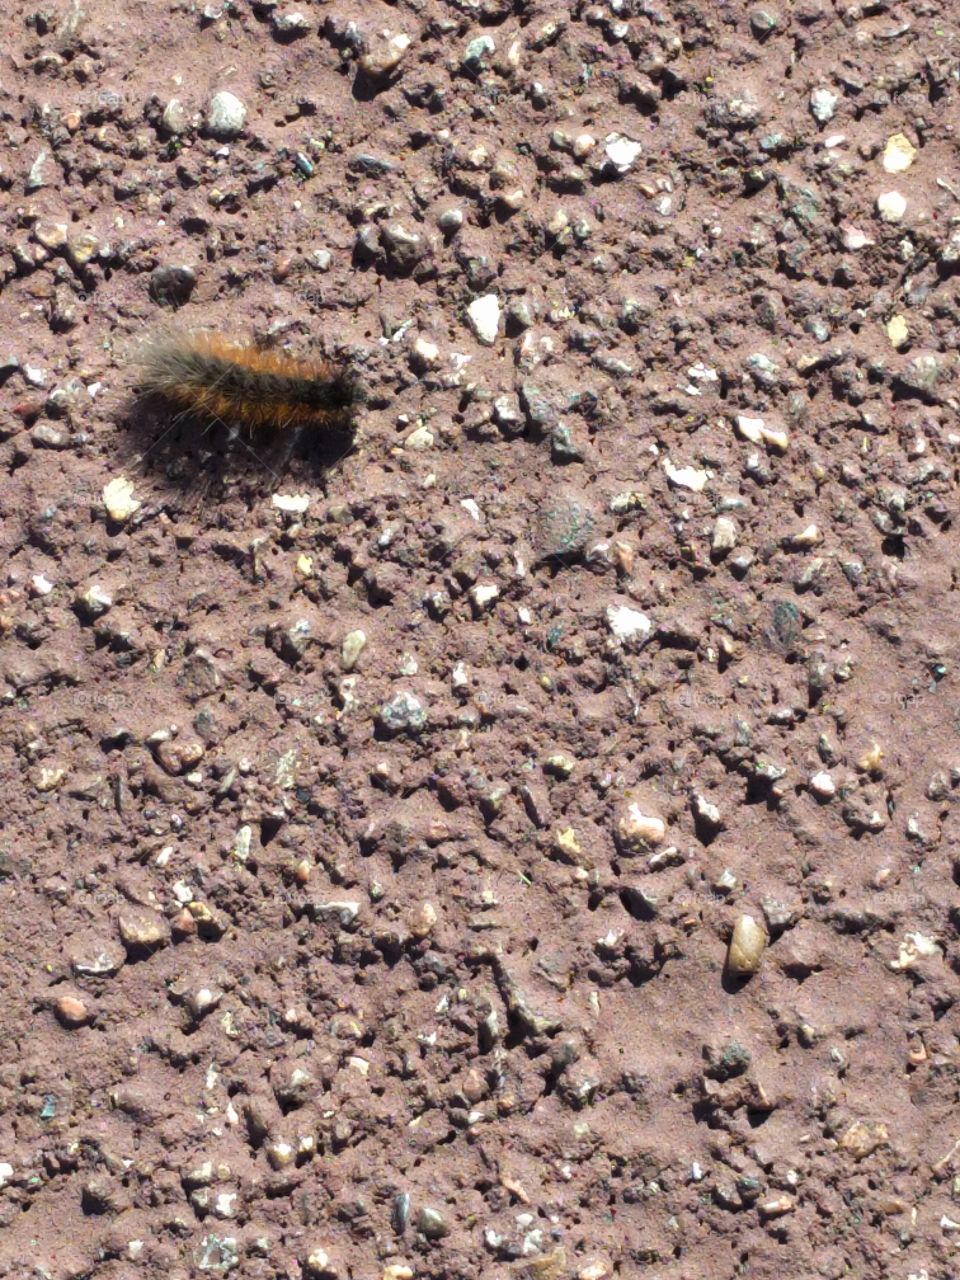 Beetle in Capulin volcano, NM